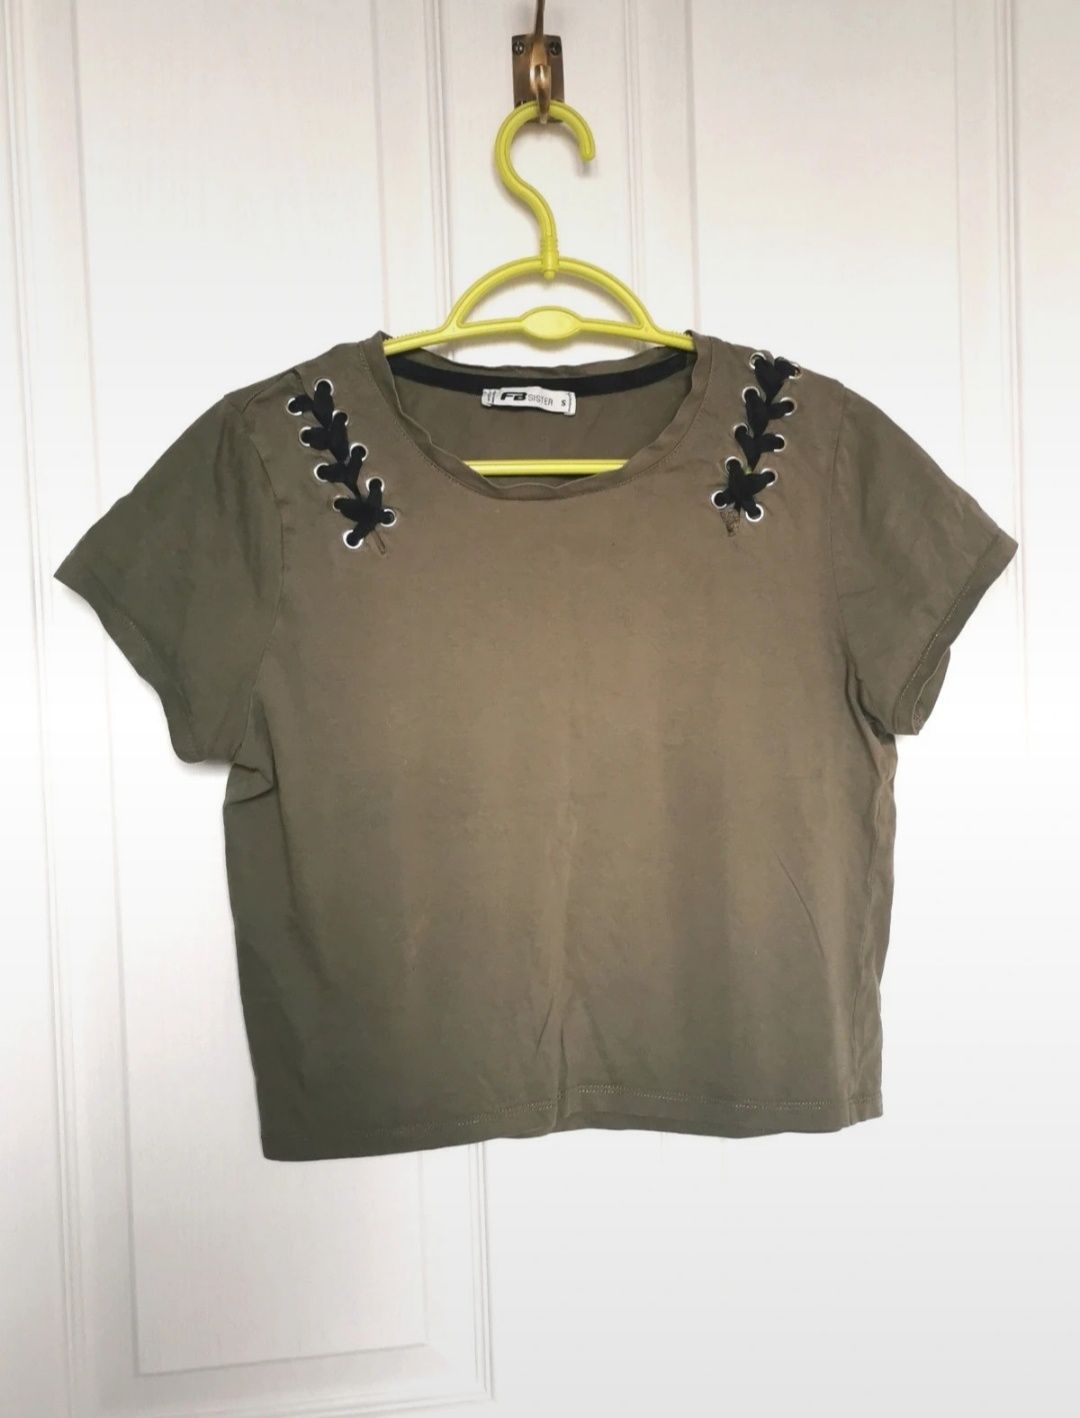 T-shirt crop top khaki, FBsister, rozmiar S